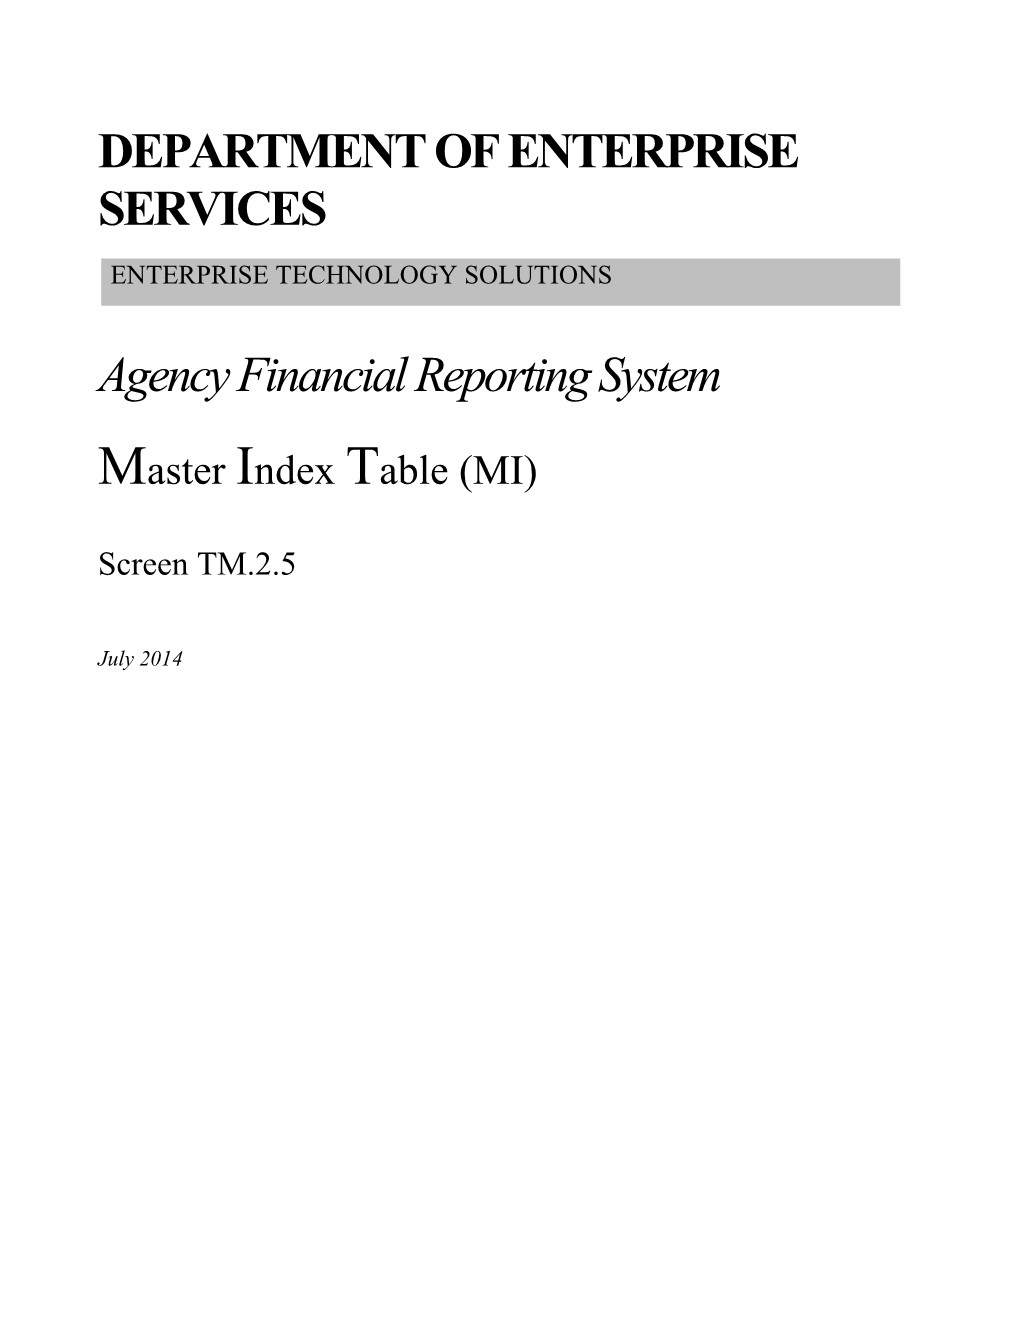 Department of Enterprise Services s2